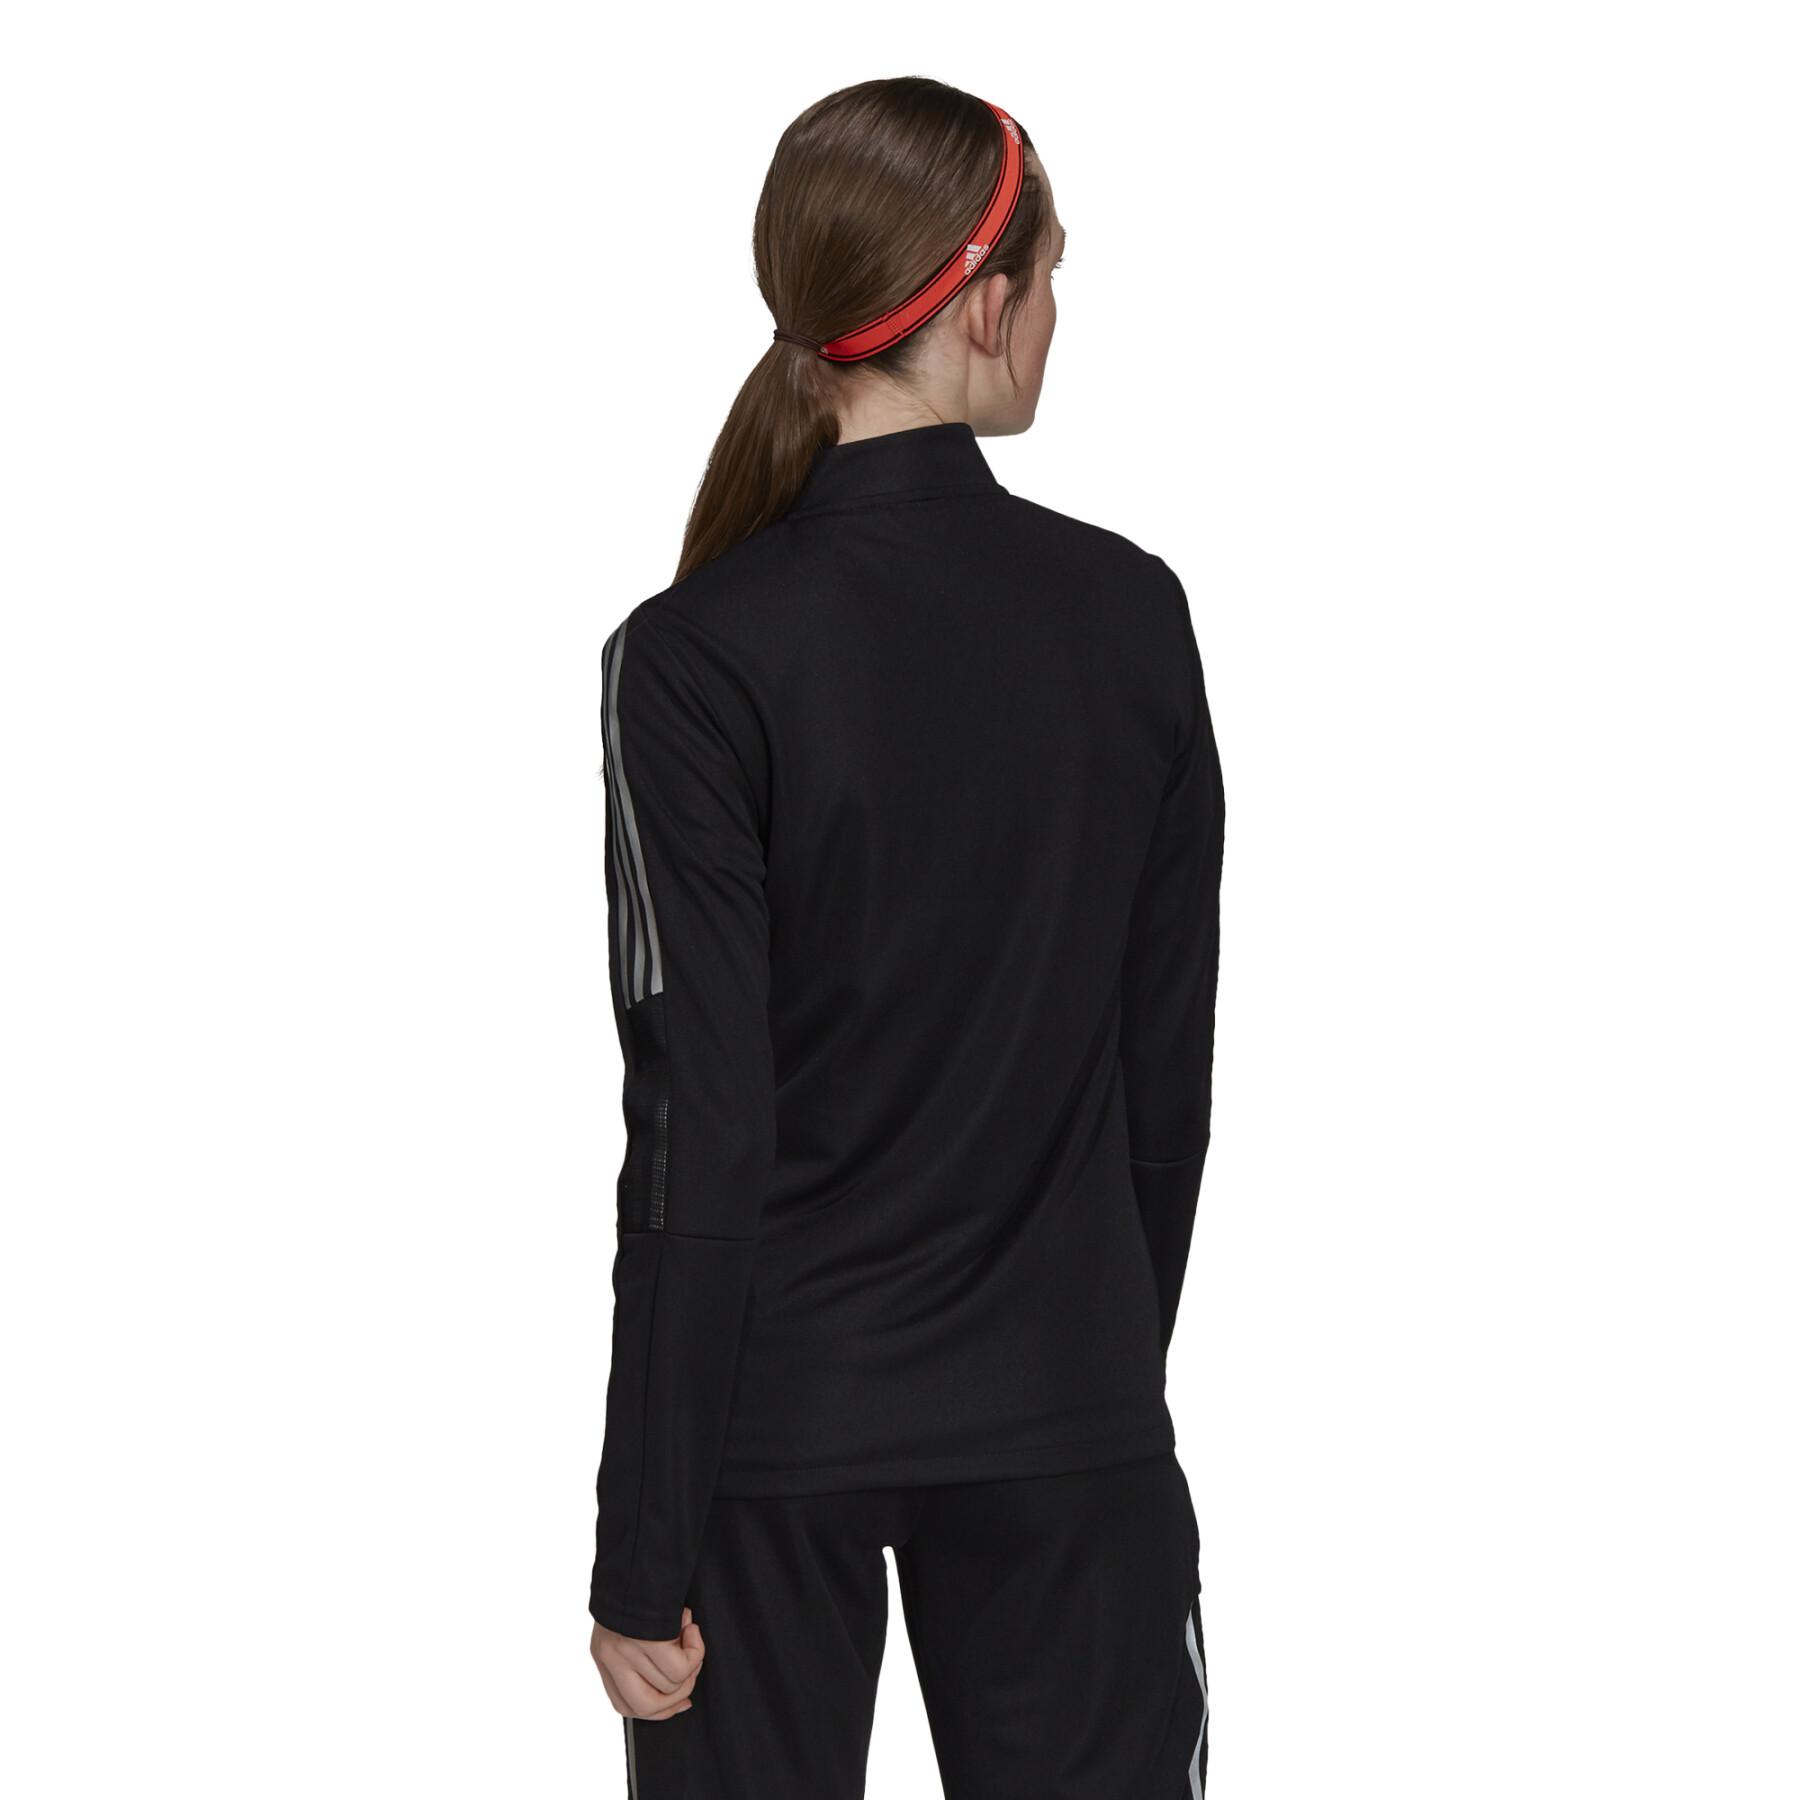 Women's sweat jacket adidas Tiro Reflective